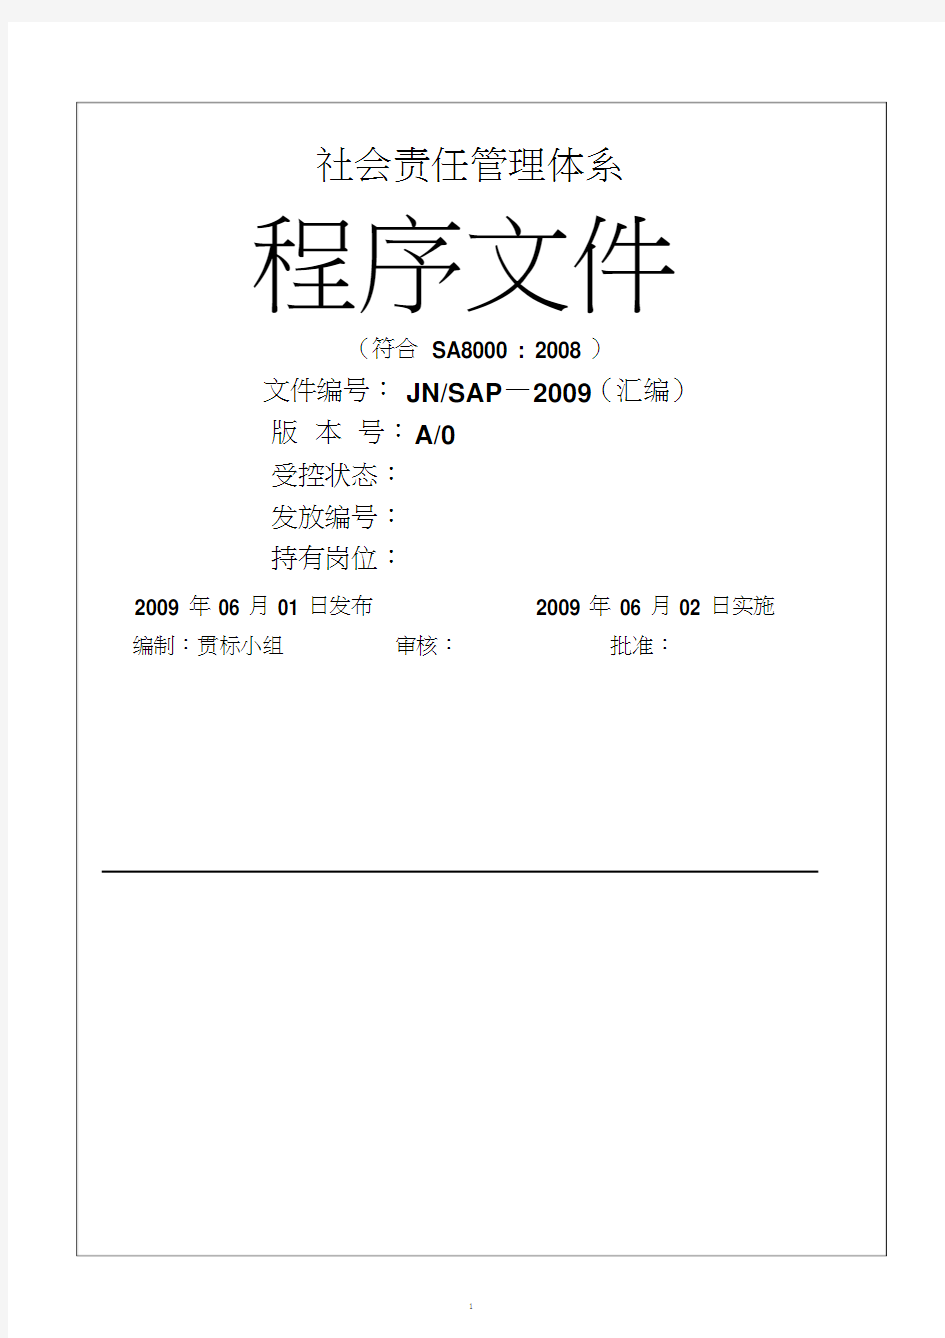 社会责任管理体系程序文件(1205155323)(7月20日).pdf